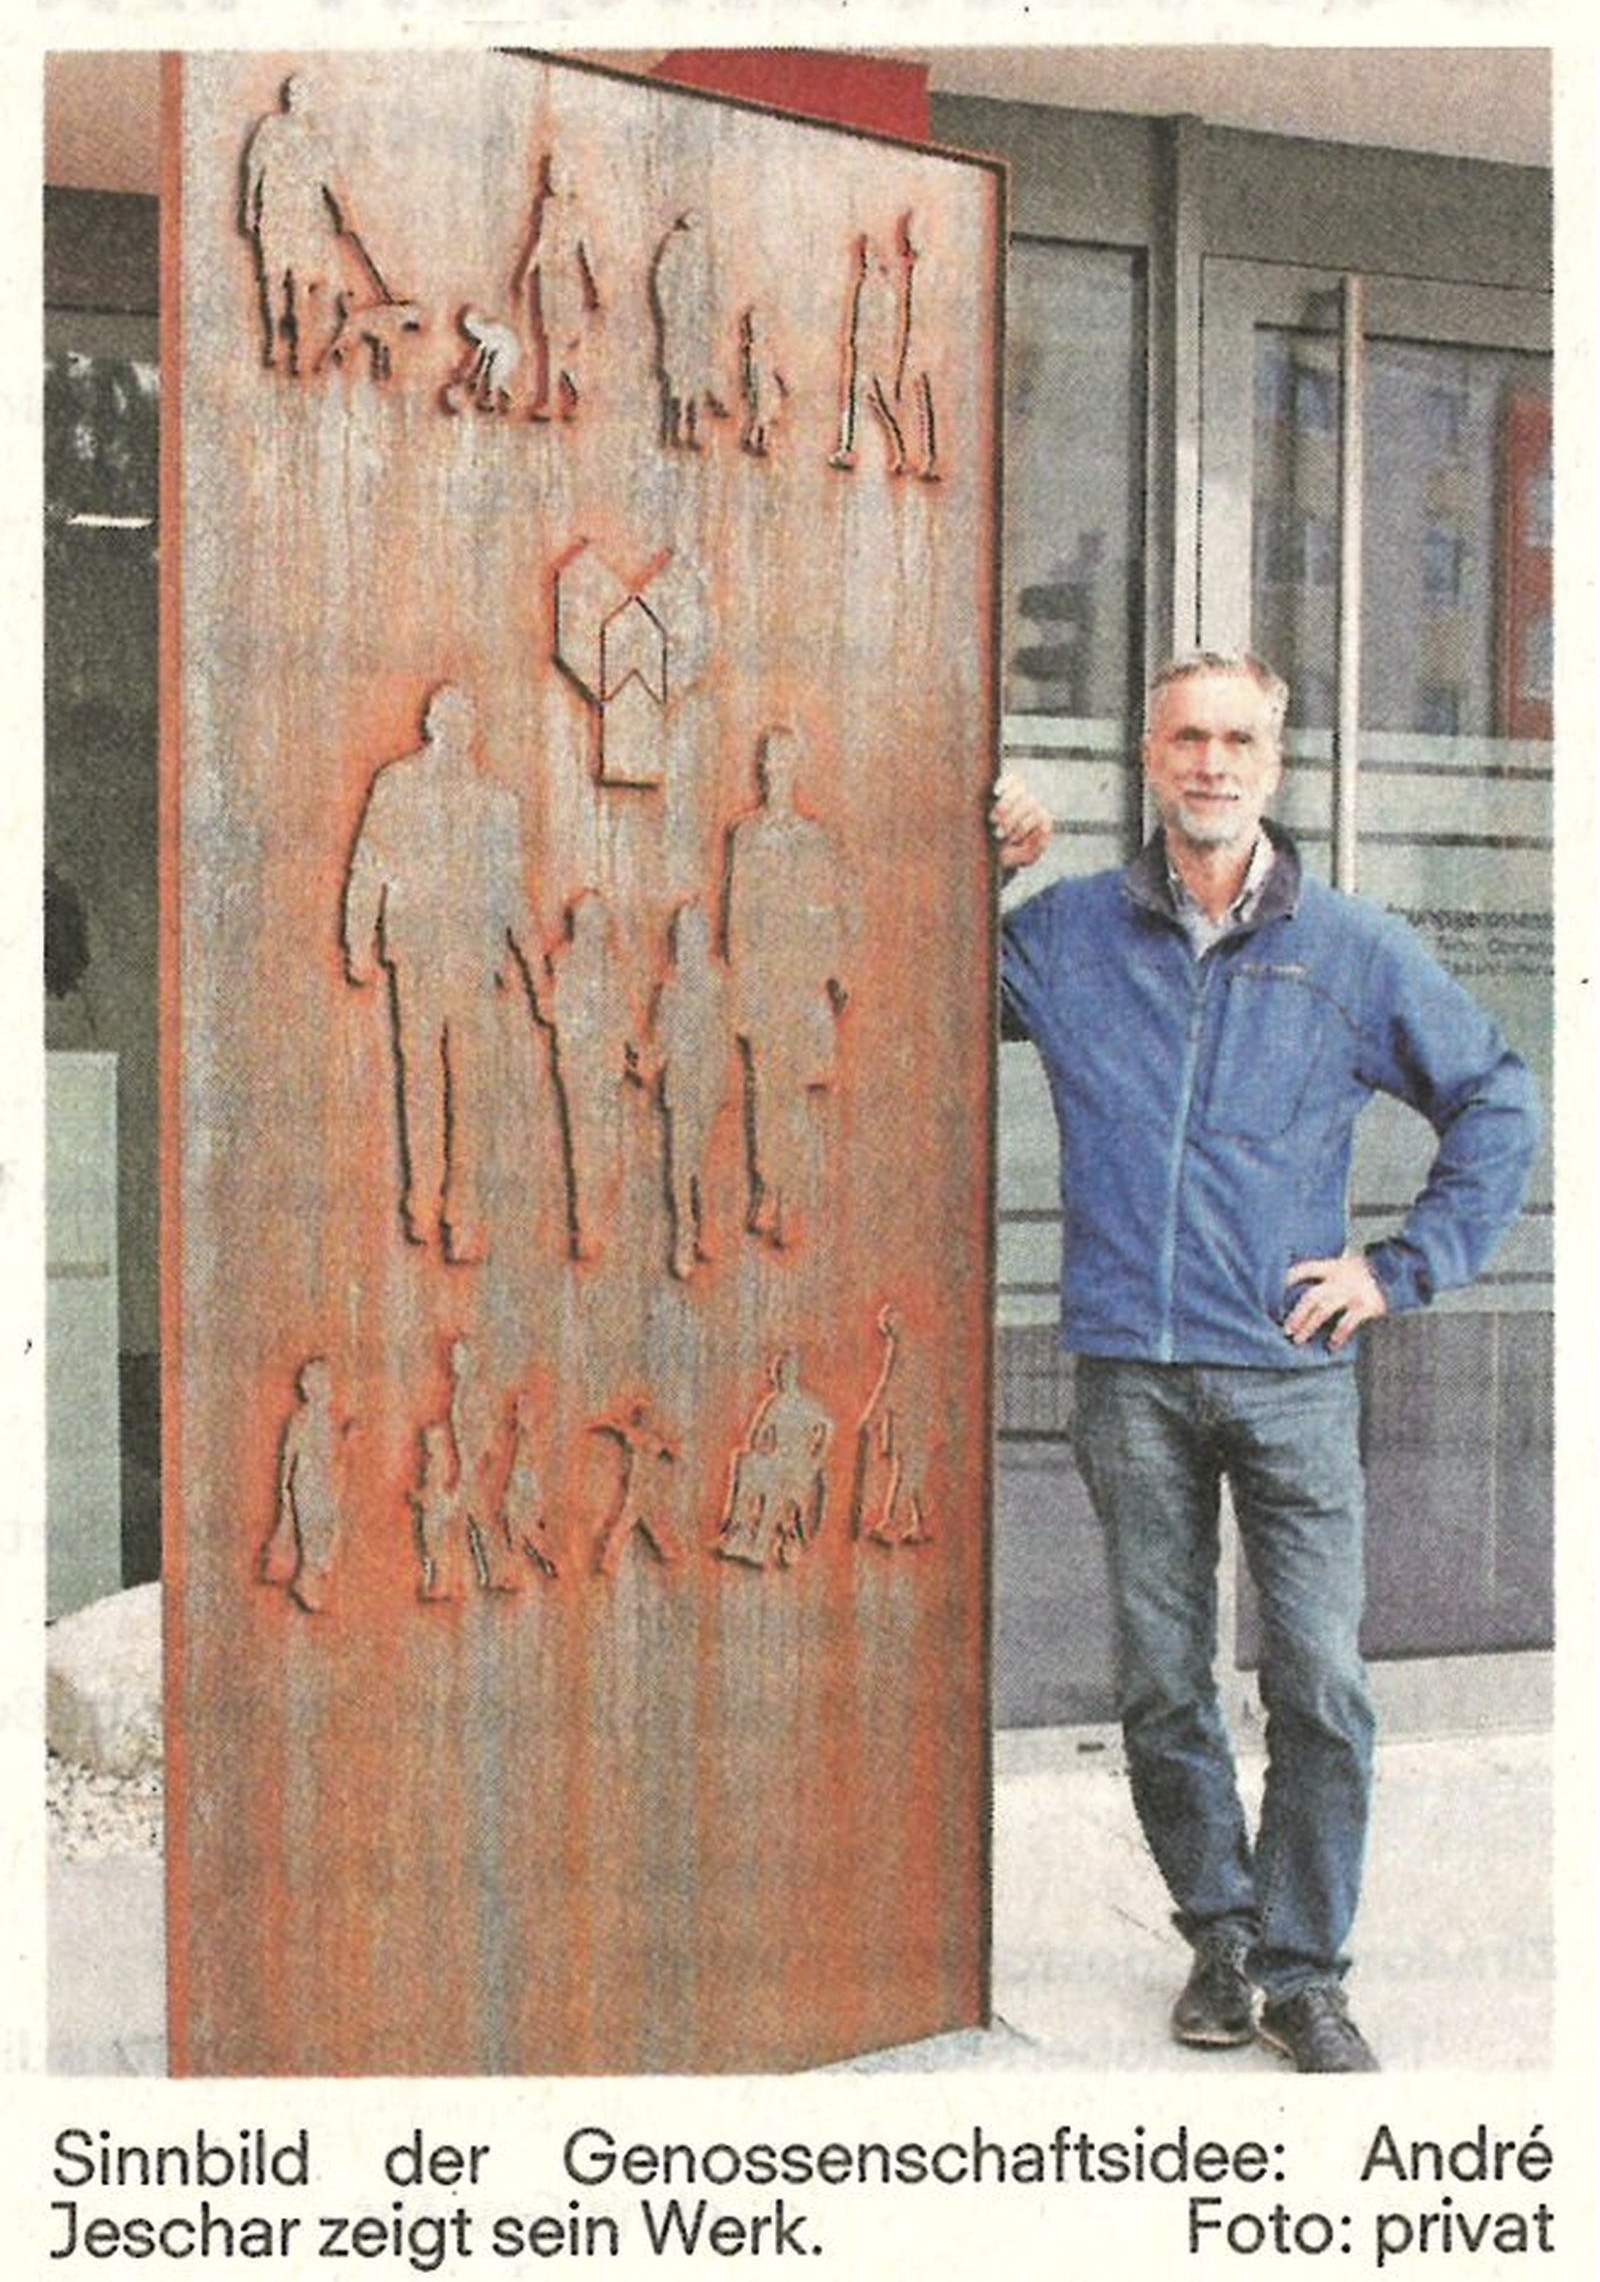 Bildhauer André Jeschar beauftragt …